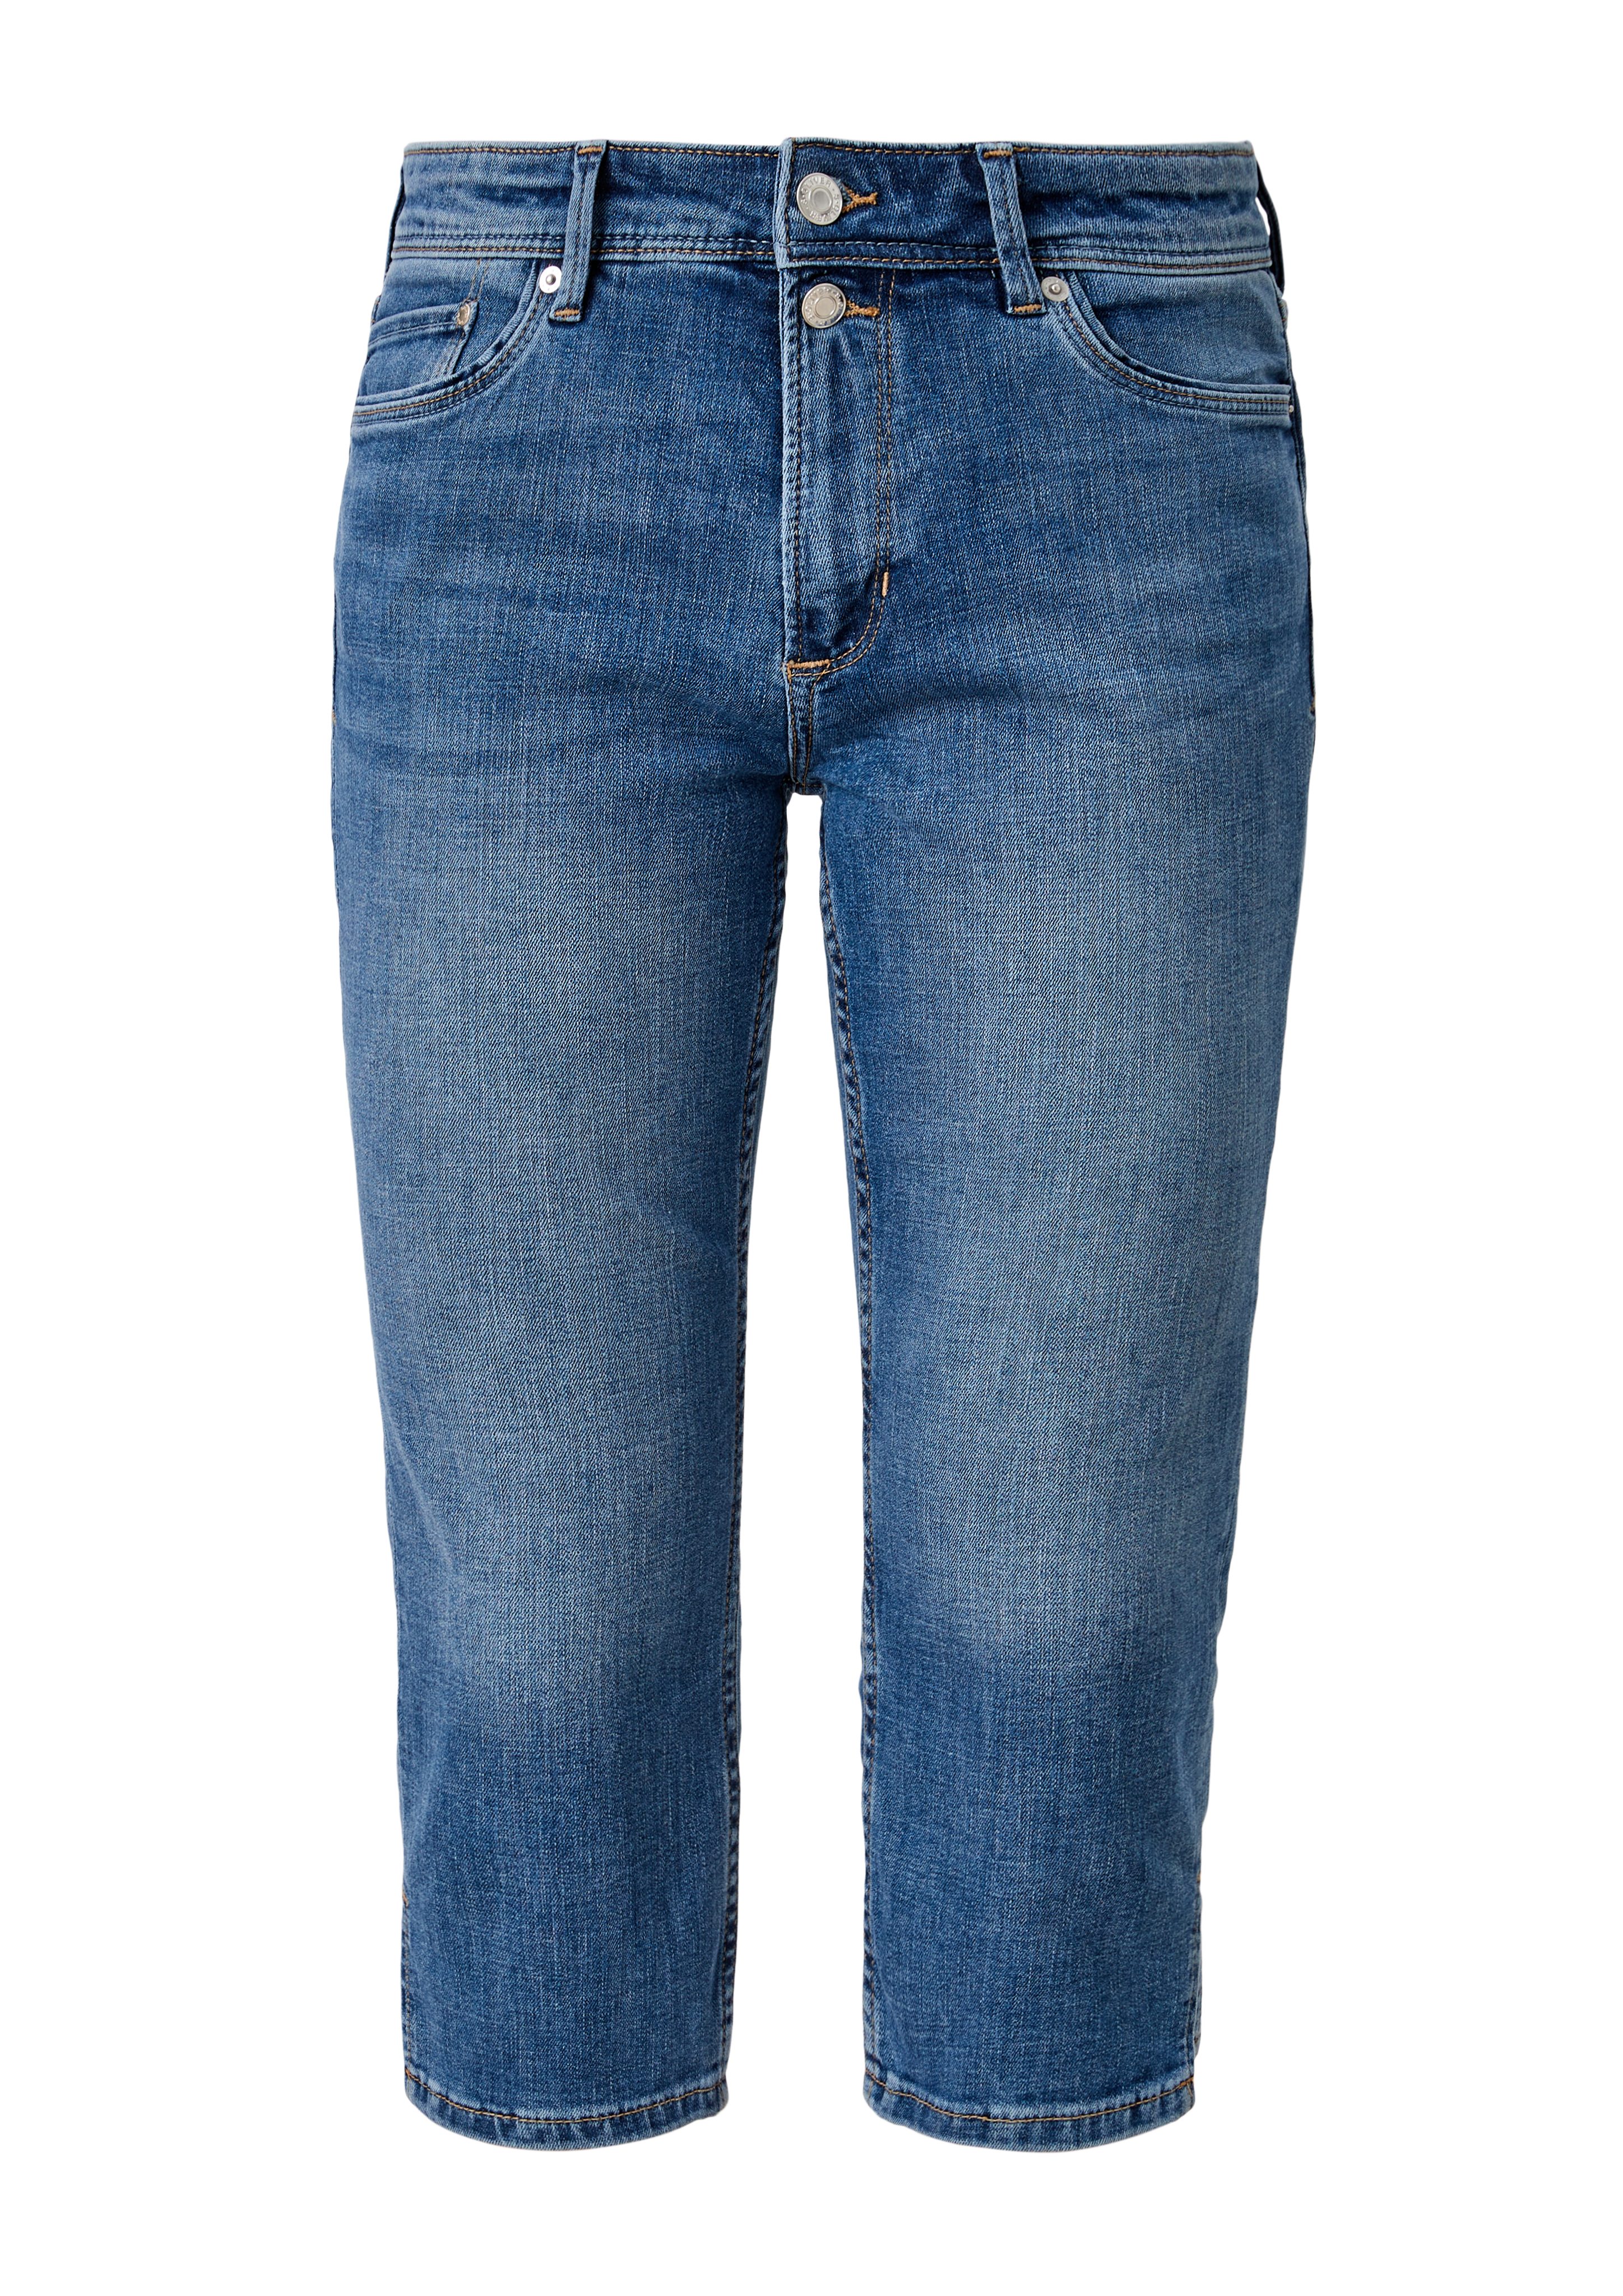 s.Oliver 7/8-Jeans Waschung, Leder-Patch blue